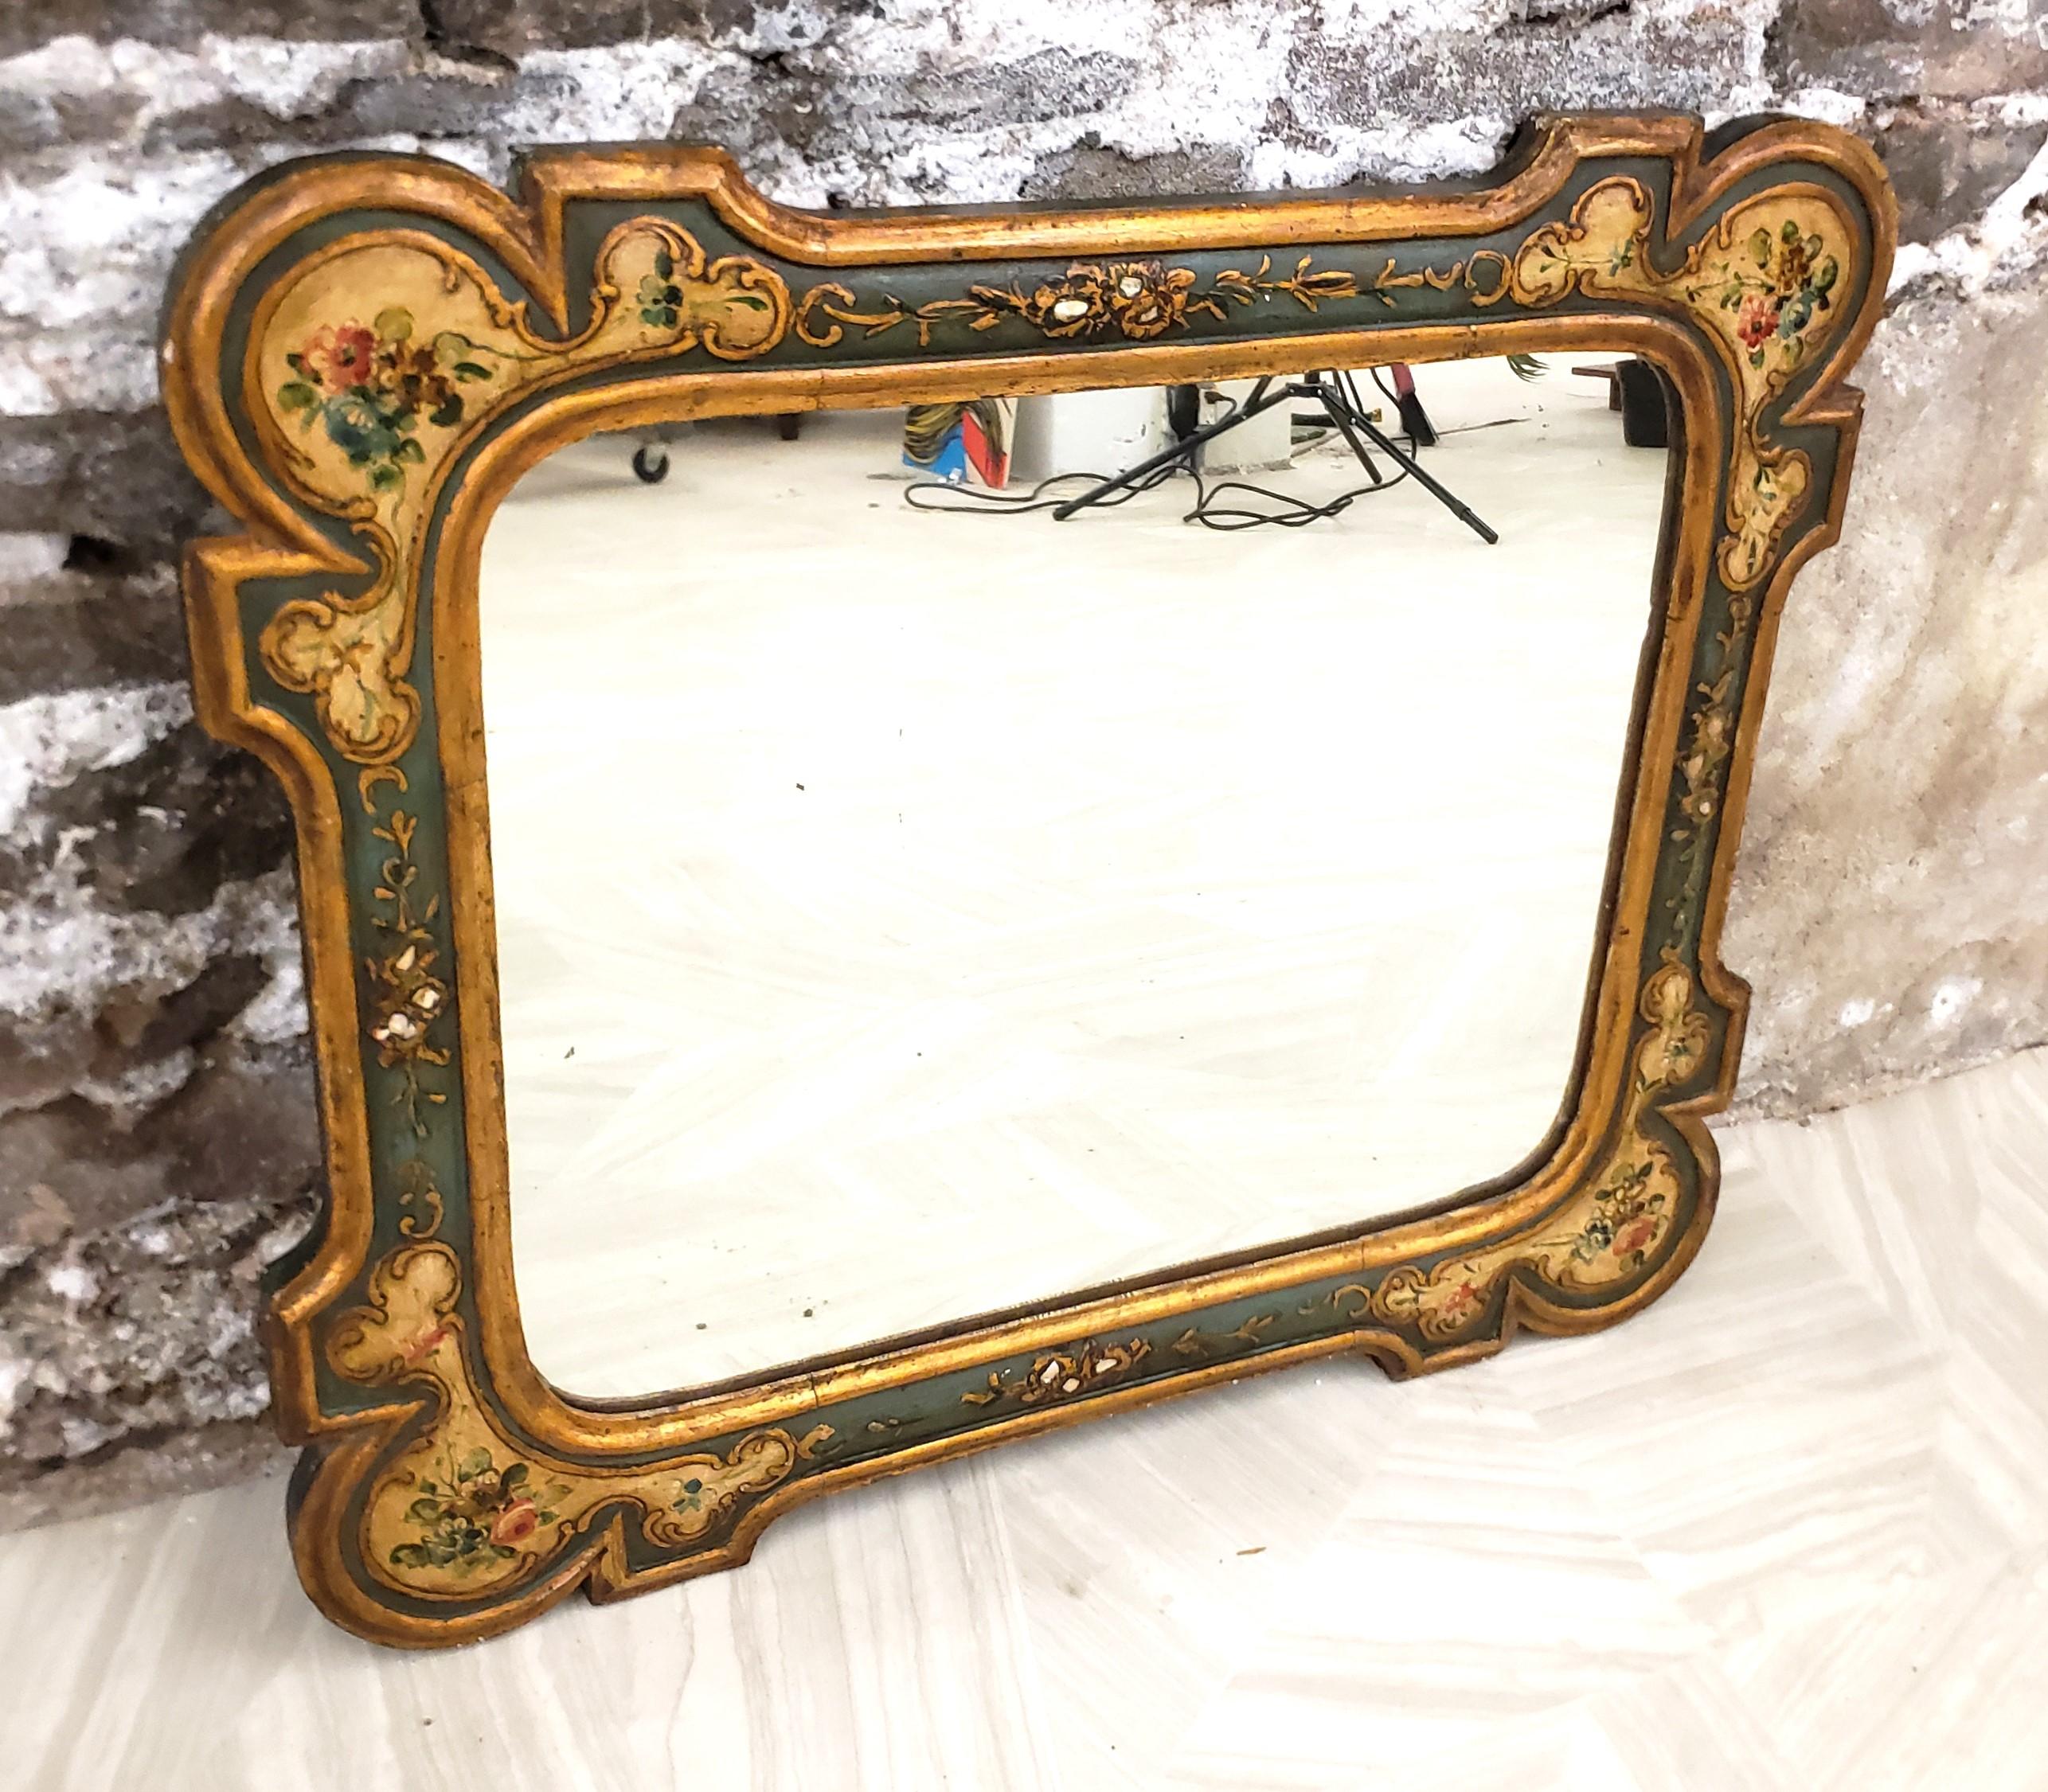 Ce miroir mural ancien ne porte pas de signature de fabricant, mais on suppose qu'il provient d'Italie, qu'il date d'environ 1900 et qu'il a été réalisé dans le style Florentine de l'époque. Le cadre du miroir est composé d'un bois tendre de forme